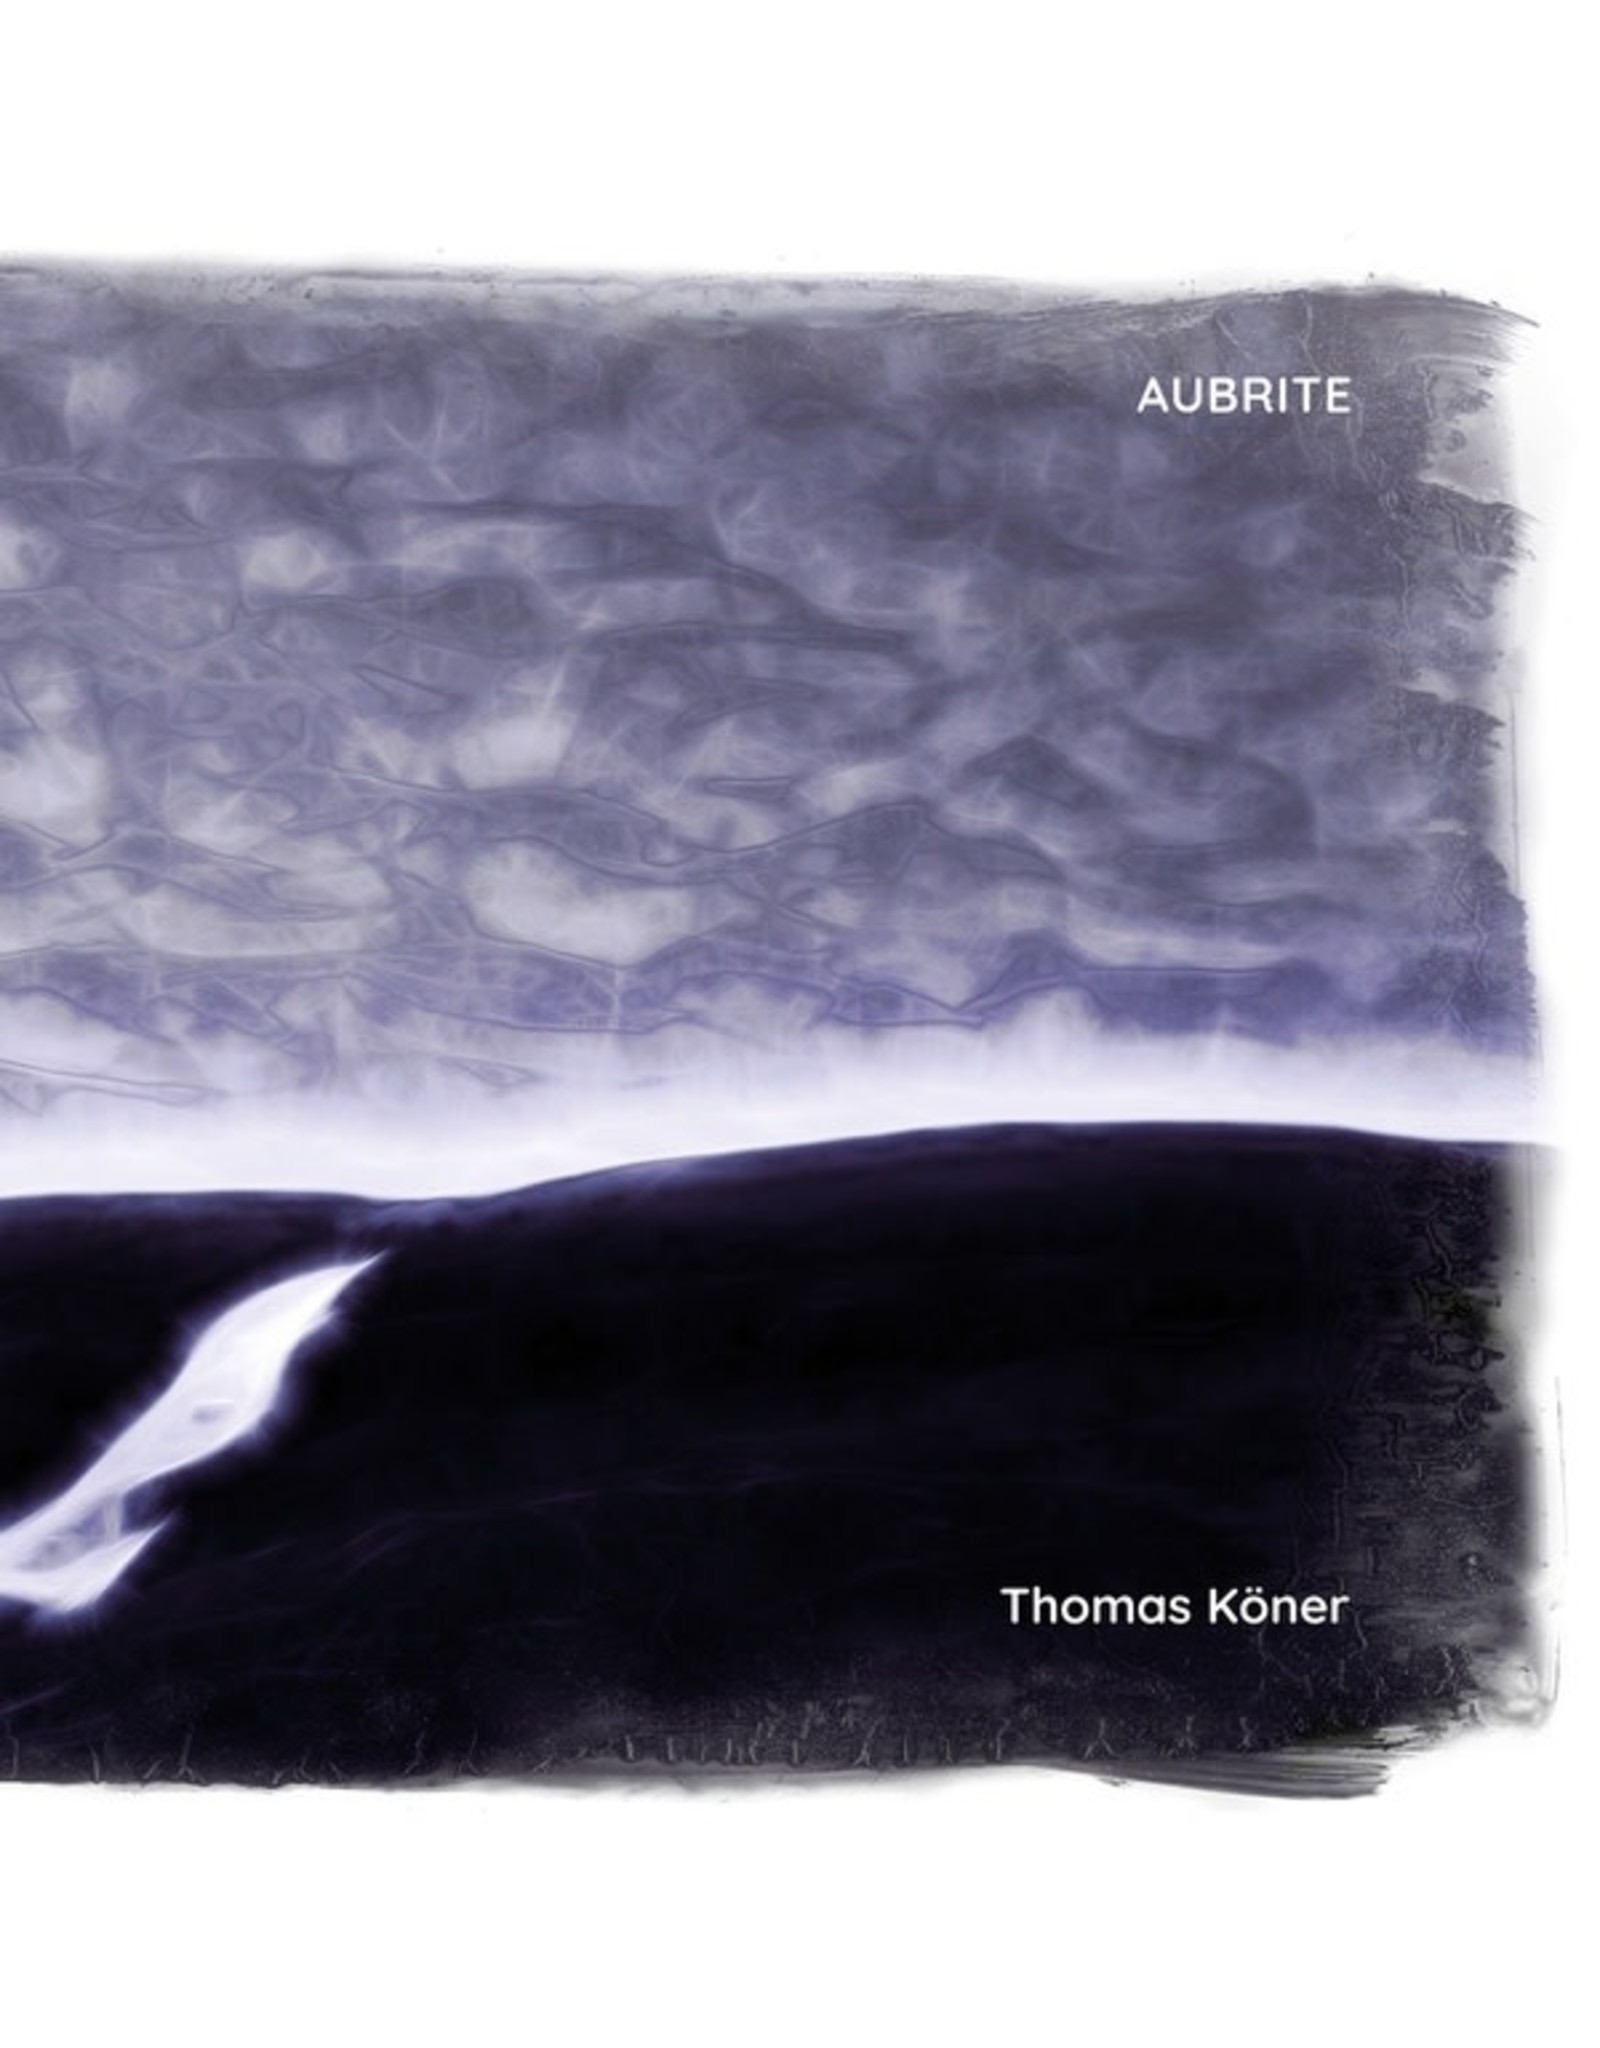 Mille Plateaux Koner, Thomas: Aubrite LP